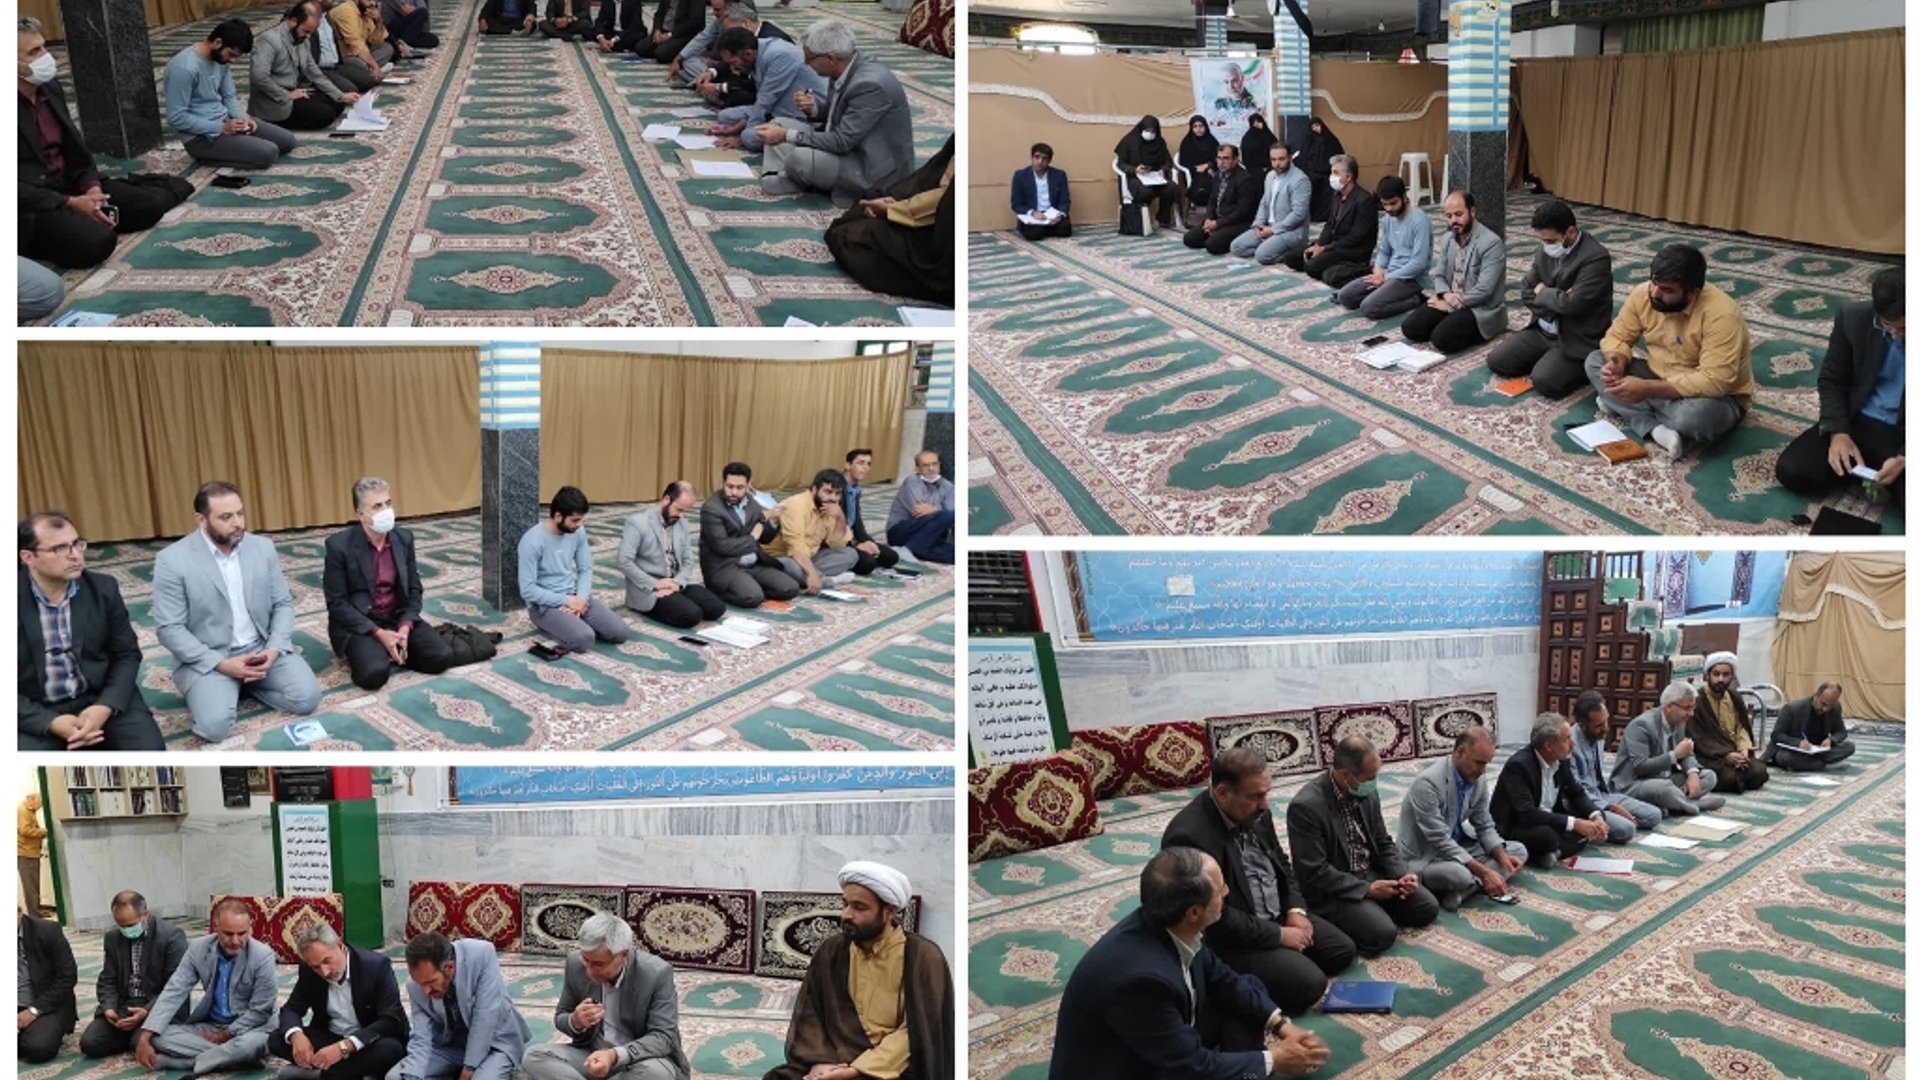 جلسه بررسی مسائل و مشکلات محله فیروز آباد خمین برگزار شد